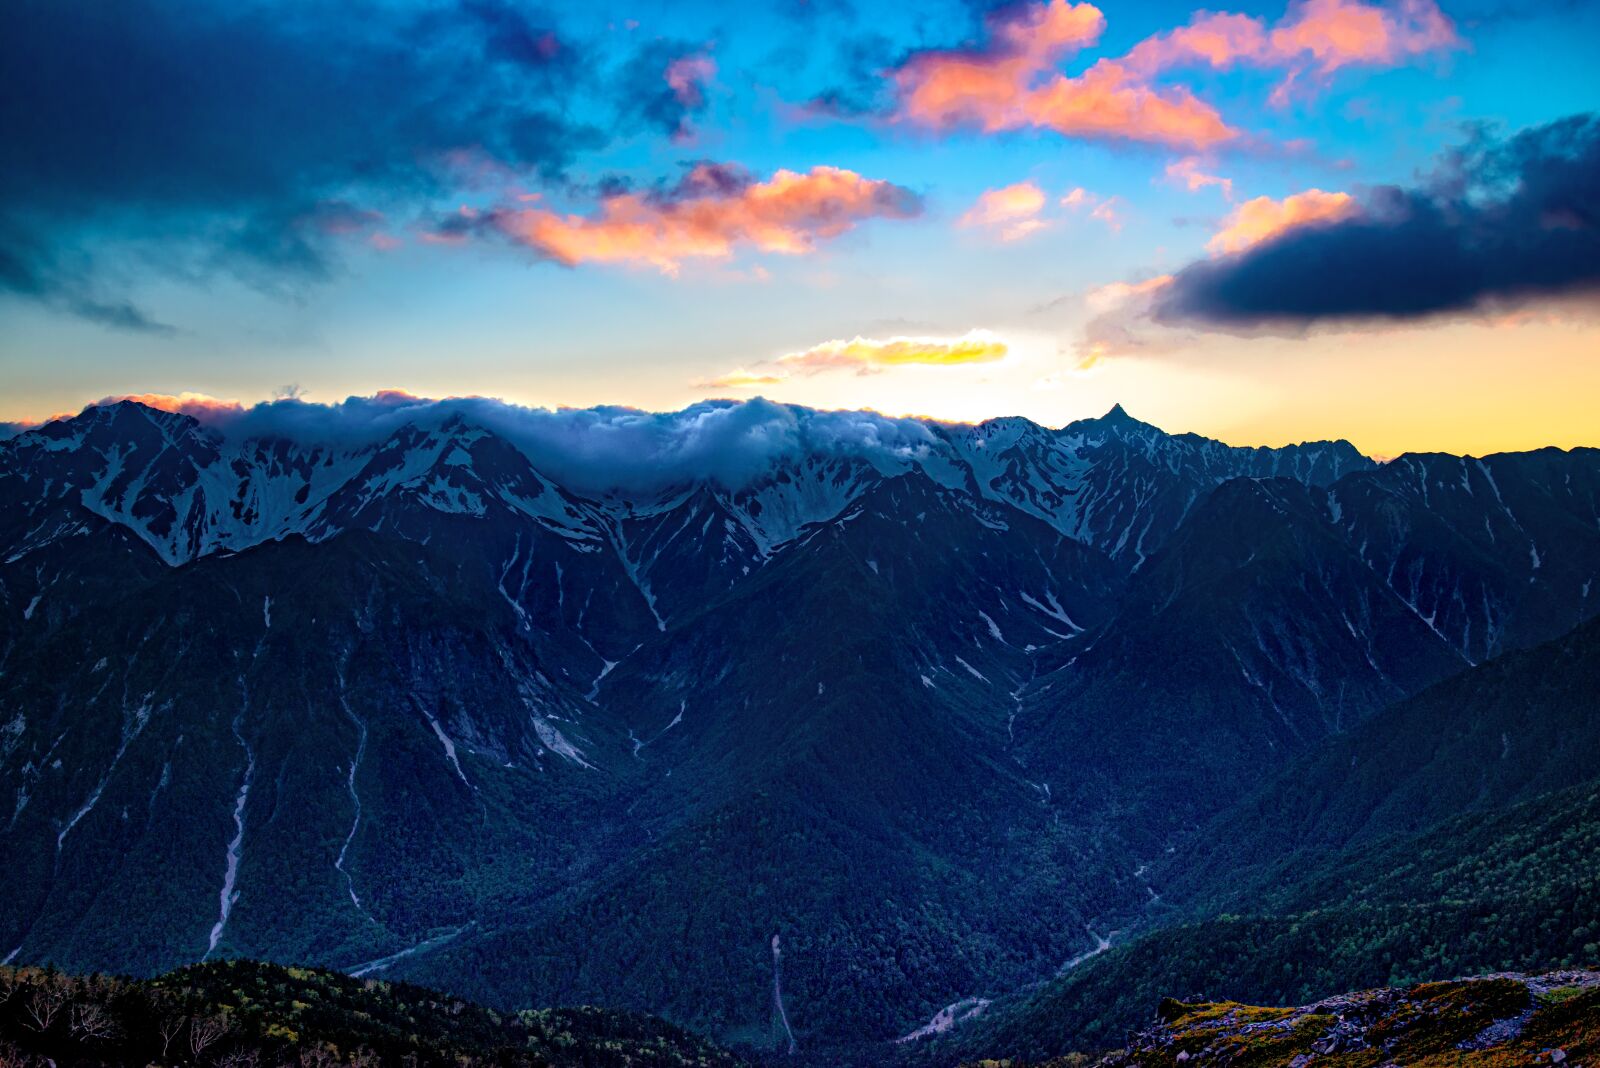 Nikon D800E sample photo. Mountainous landscape, after sunset photography